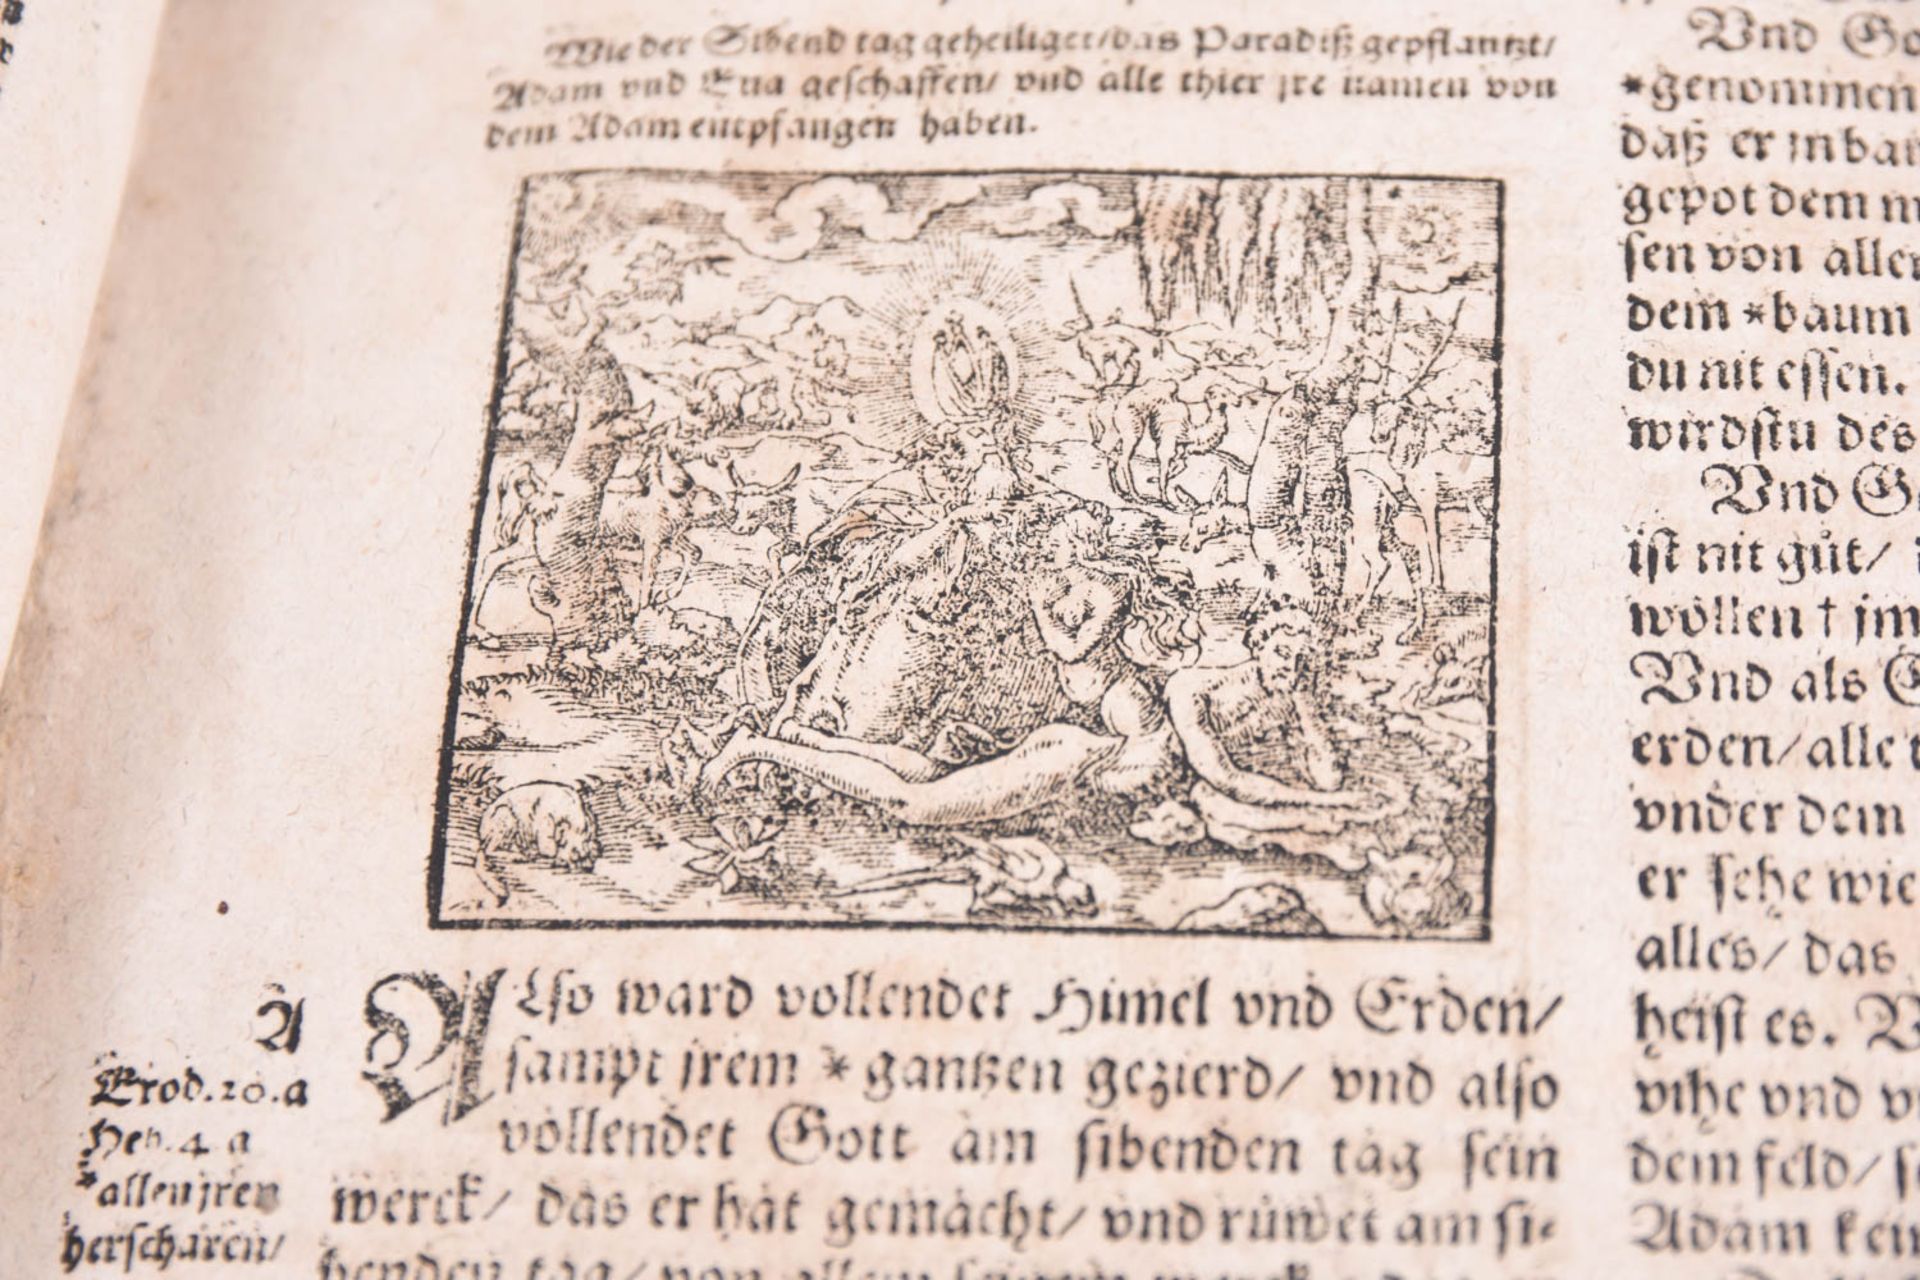 Bibel, 1610 - Image 10 of 17